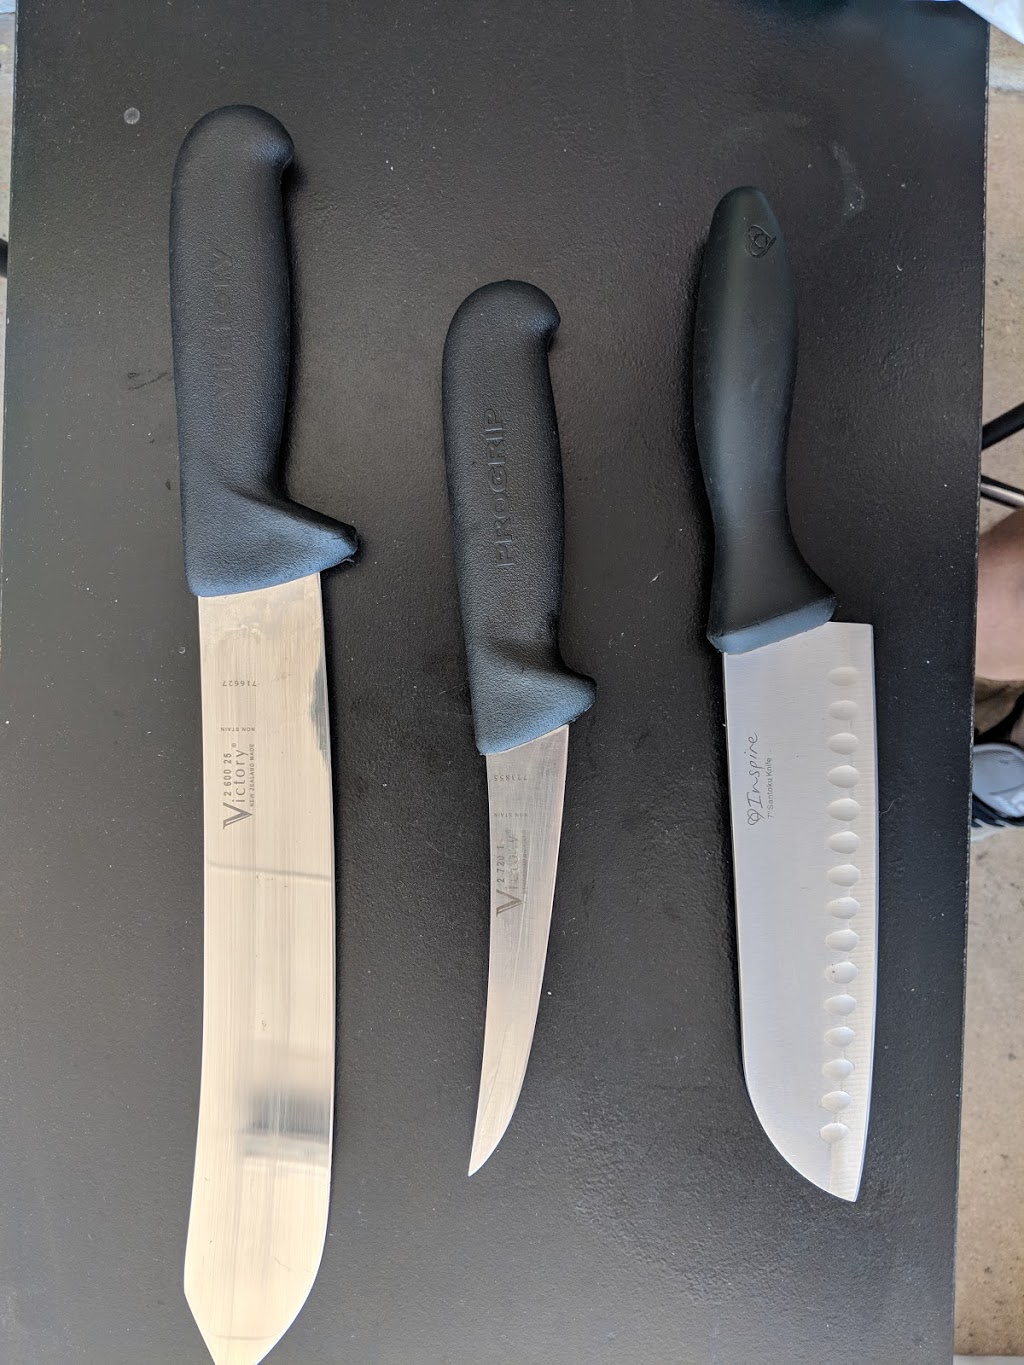 Smithys Knife Sharpening | 11 Olinda Ct, Bohle Plains QLD 4817, Australia | Phone: 0432 763 693